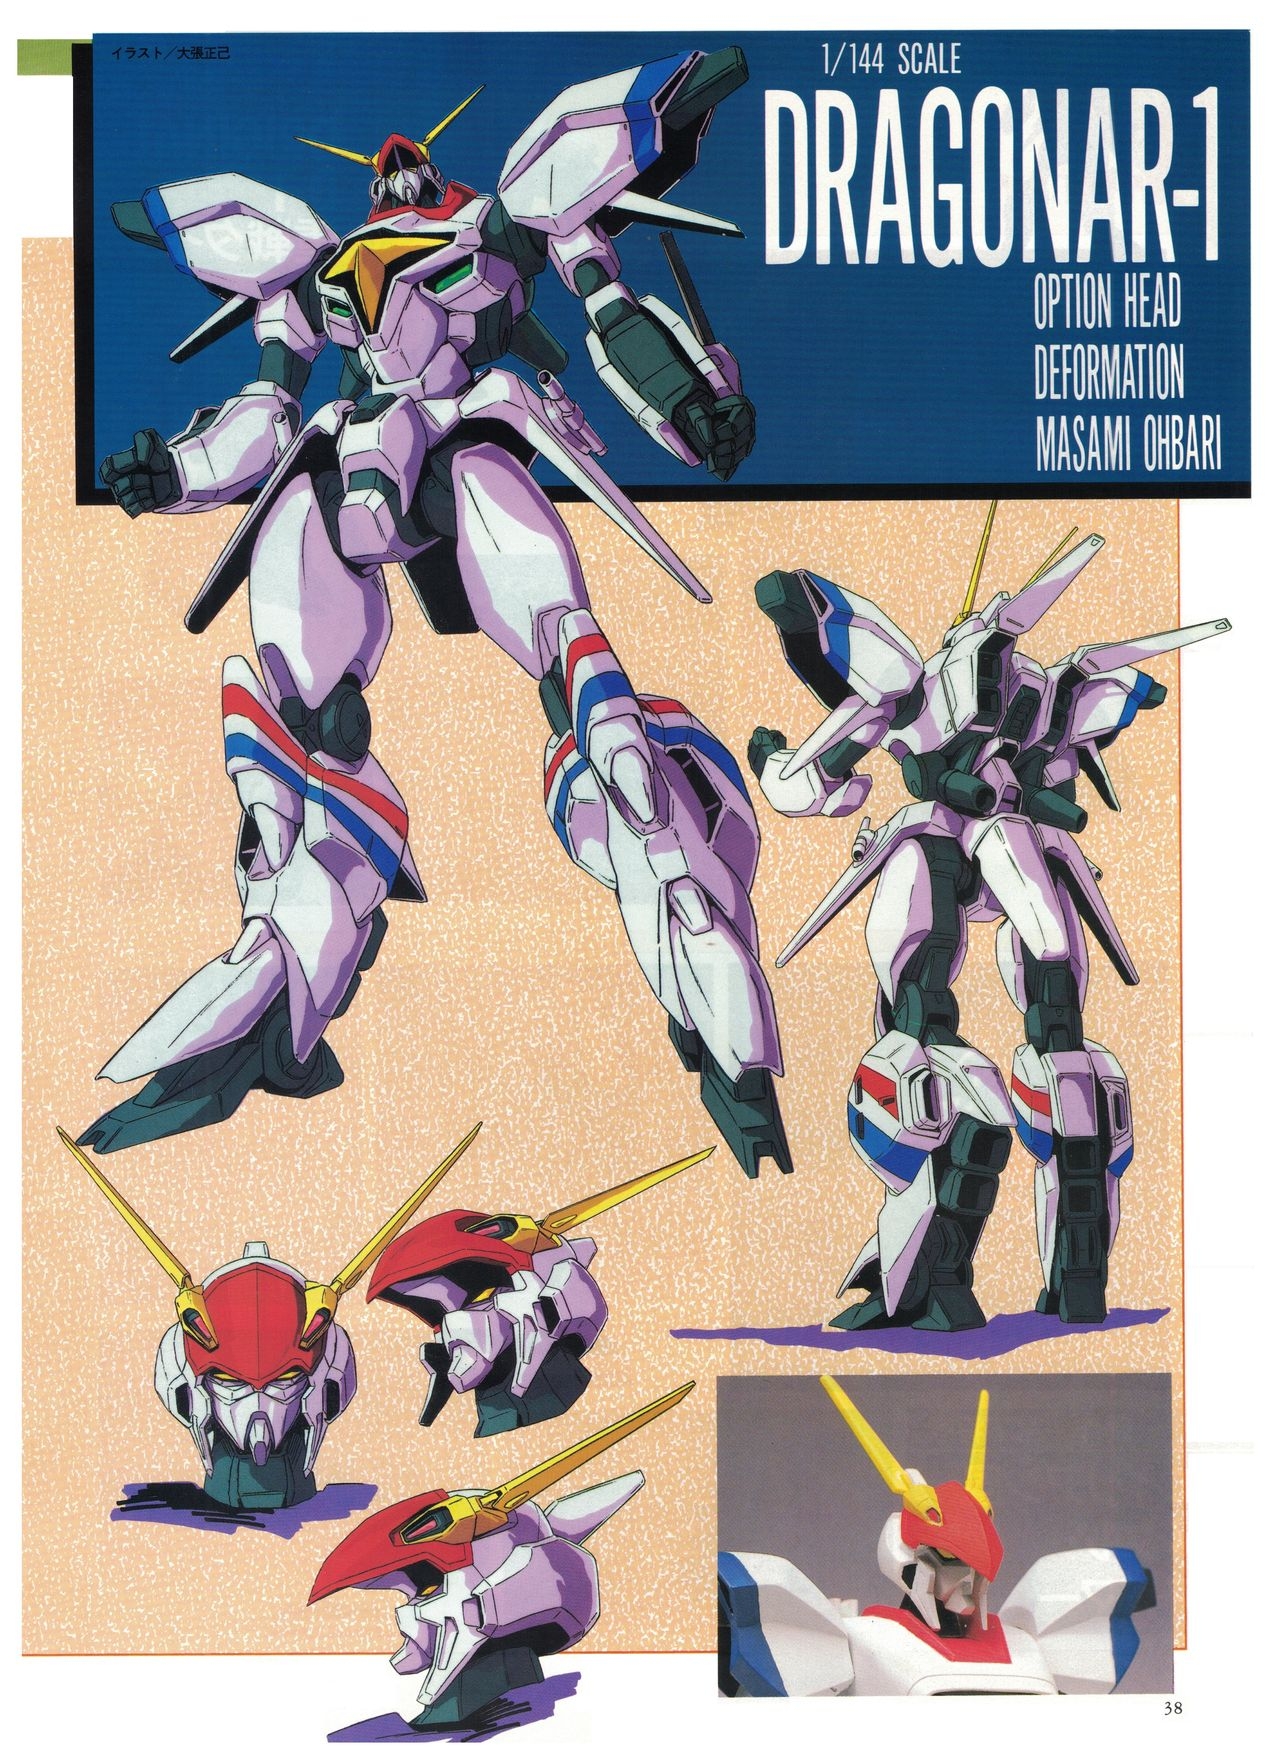 Metal Armor Dragonar (B-Club Special) 27